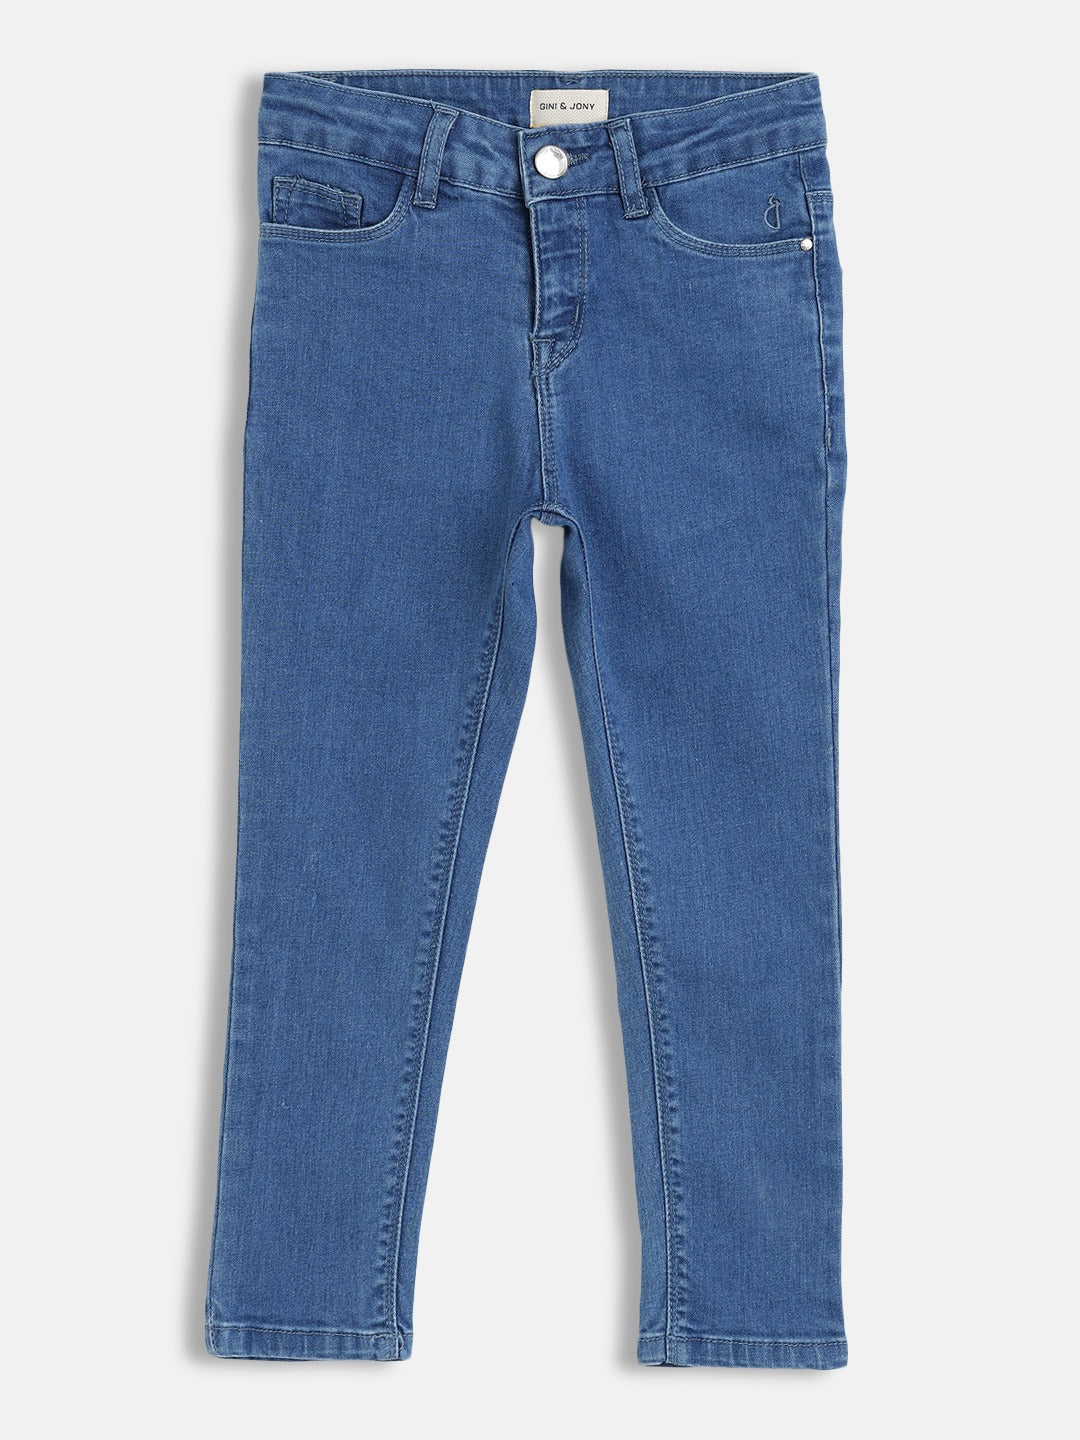 Girls Blue Solid Denim Jeans